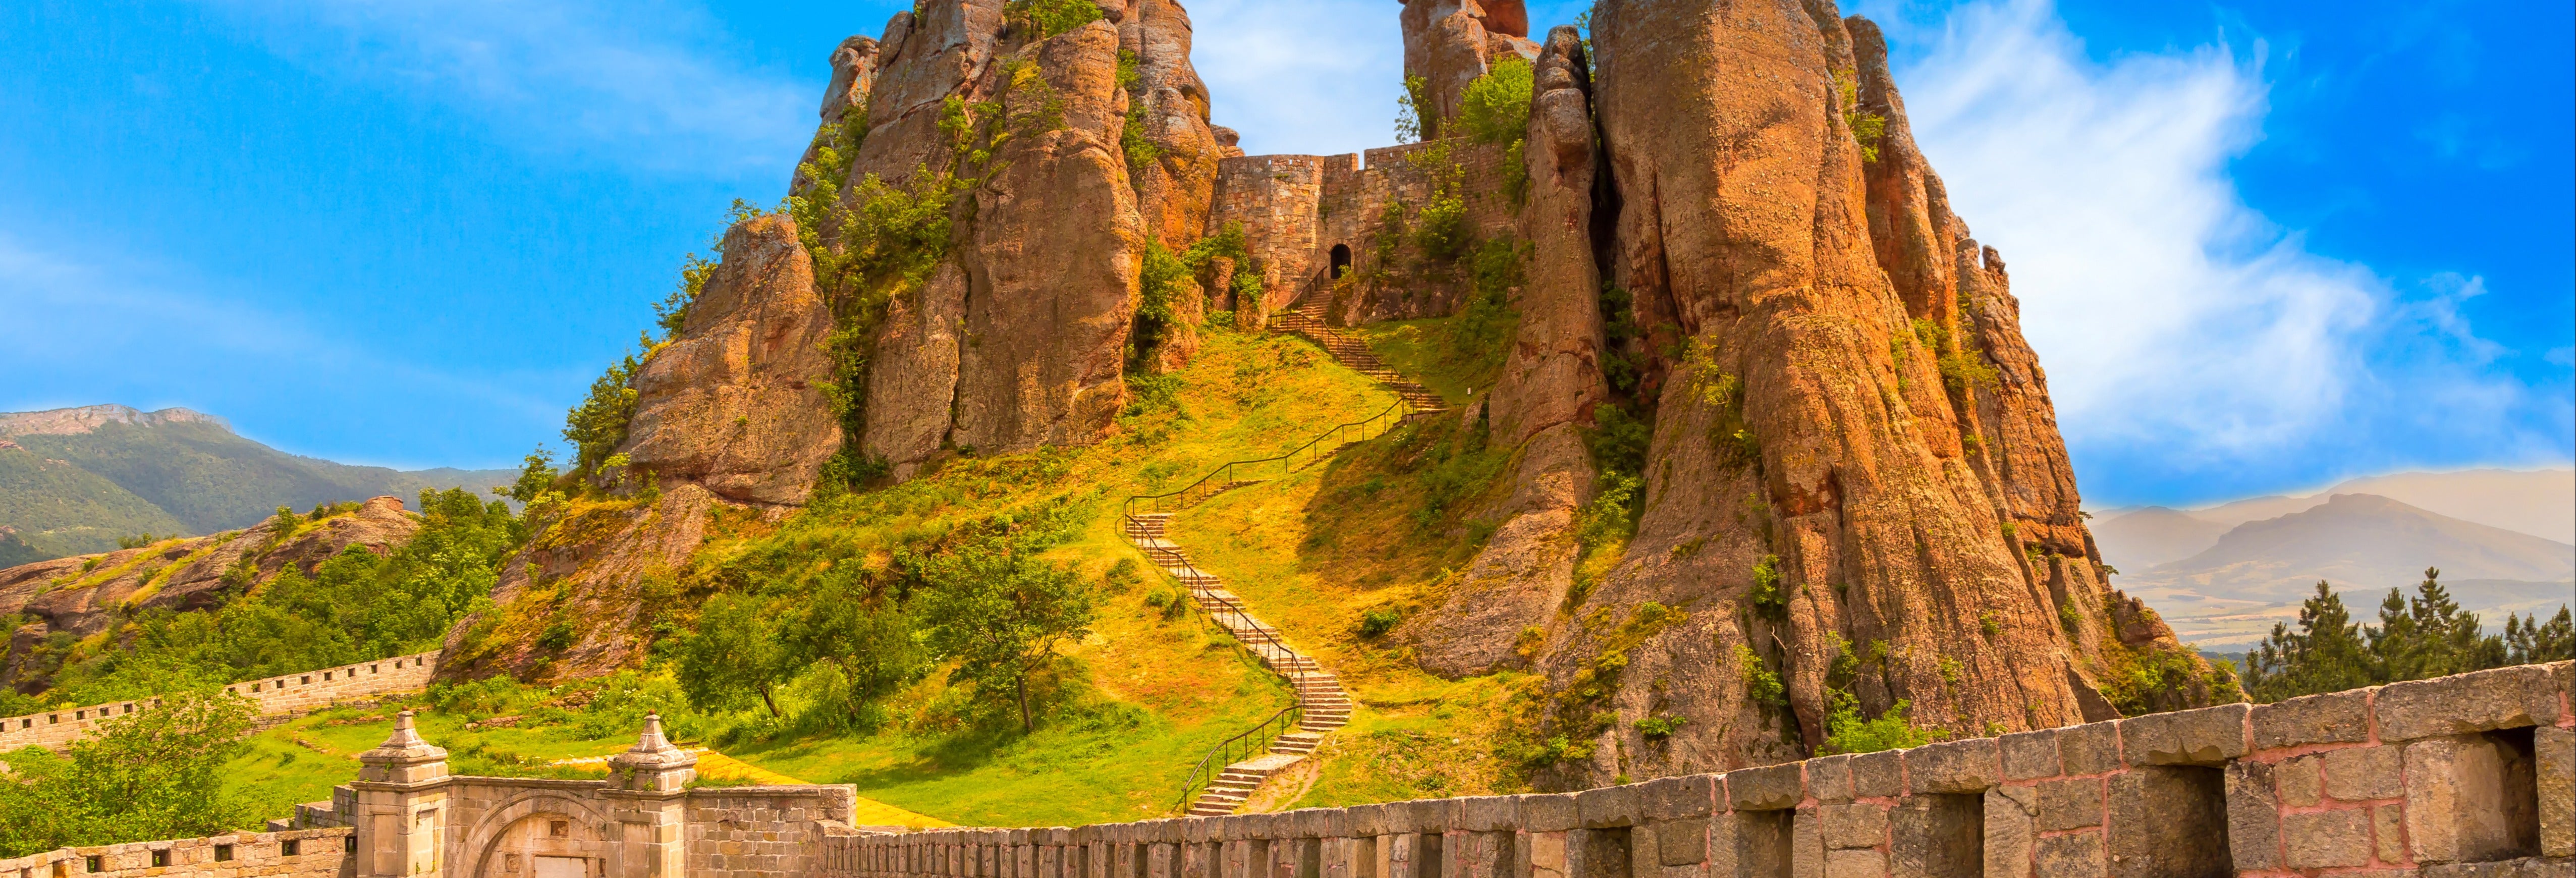 Excursão às rochas de Belogradchik e sua fortaleza